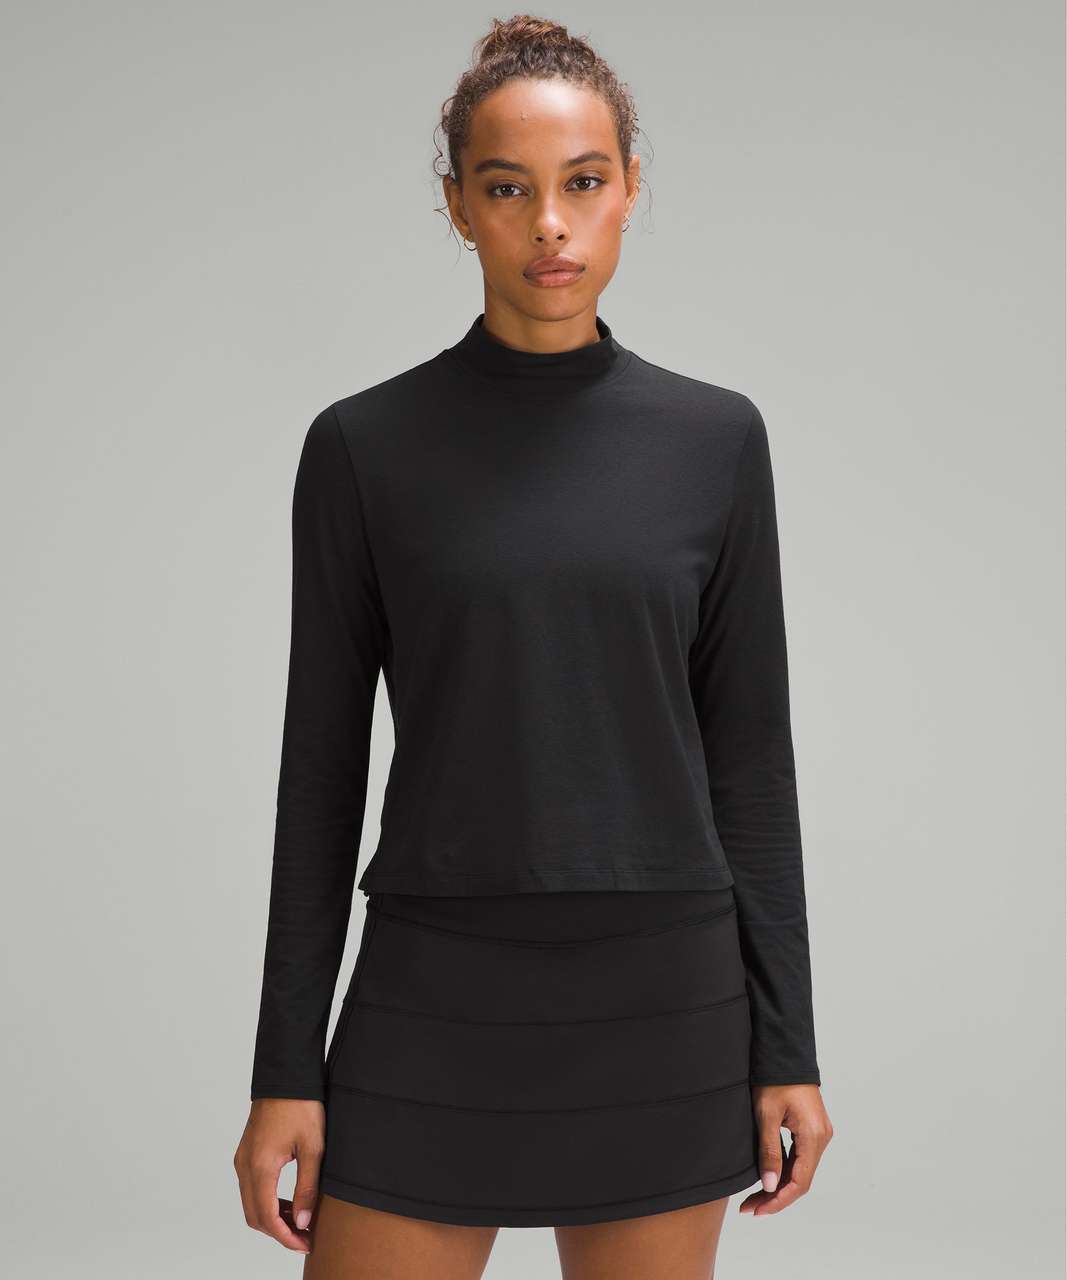 Lululemon Classic-Fit Cotton-Blend Mockneck Long-Sleeve Shirt - Black